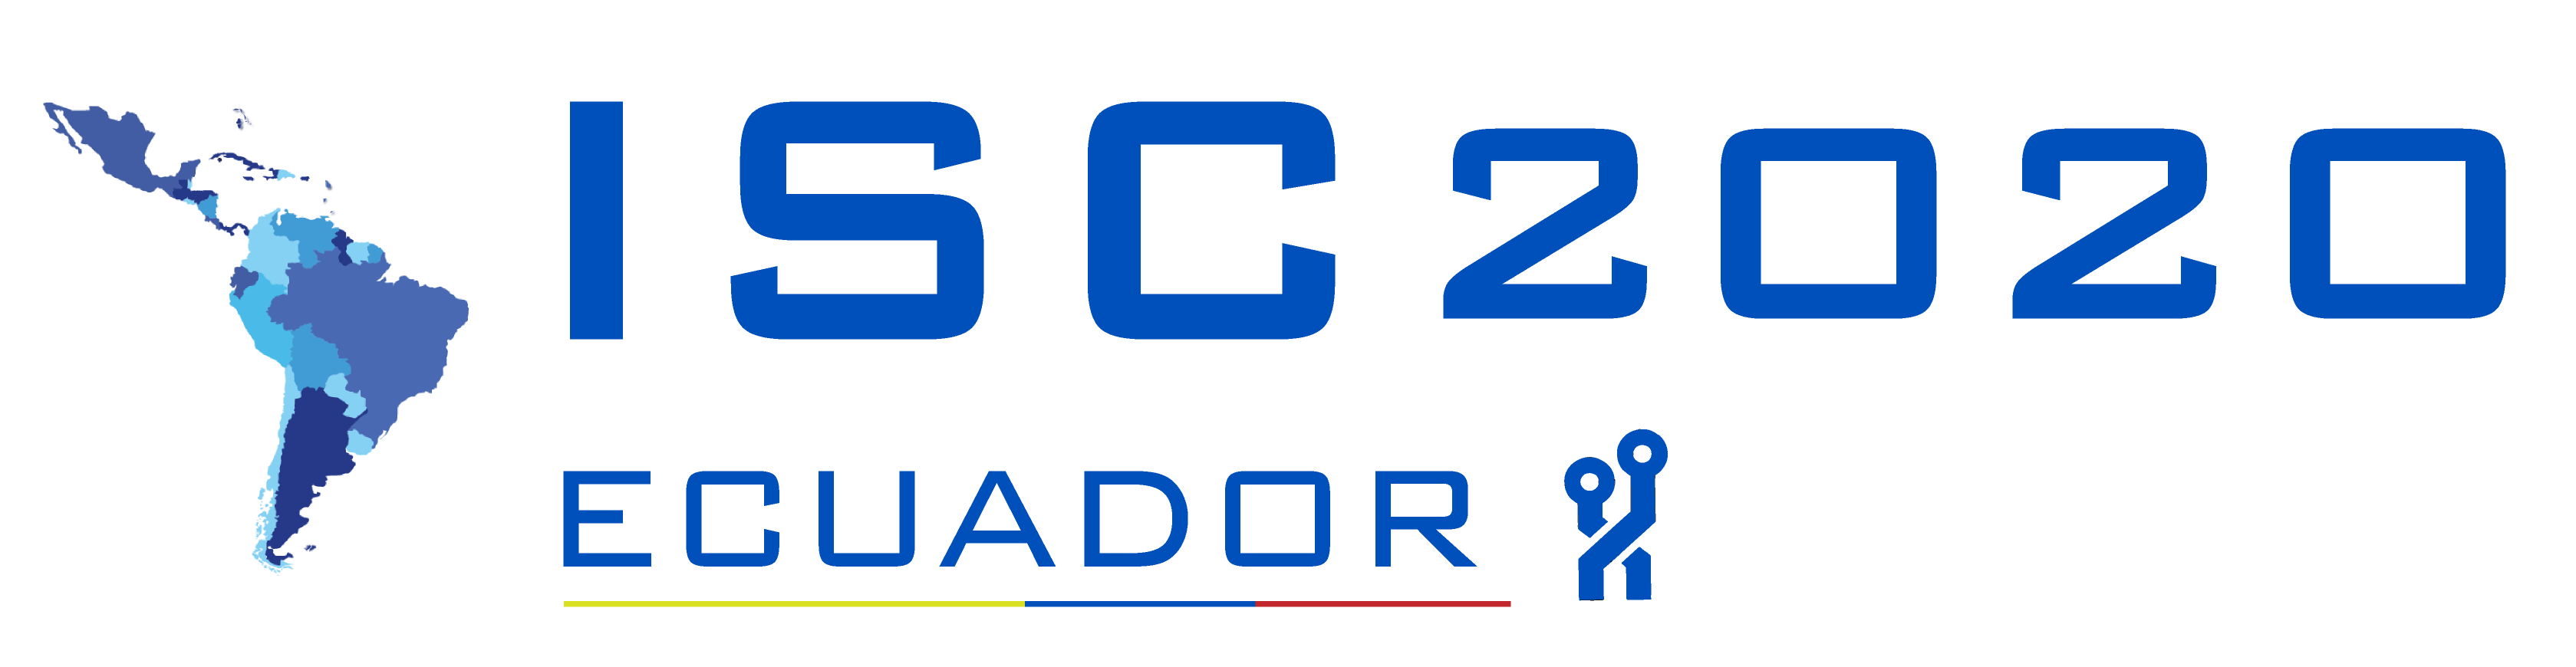 ISC 2020 Ecuador